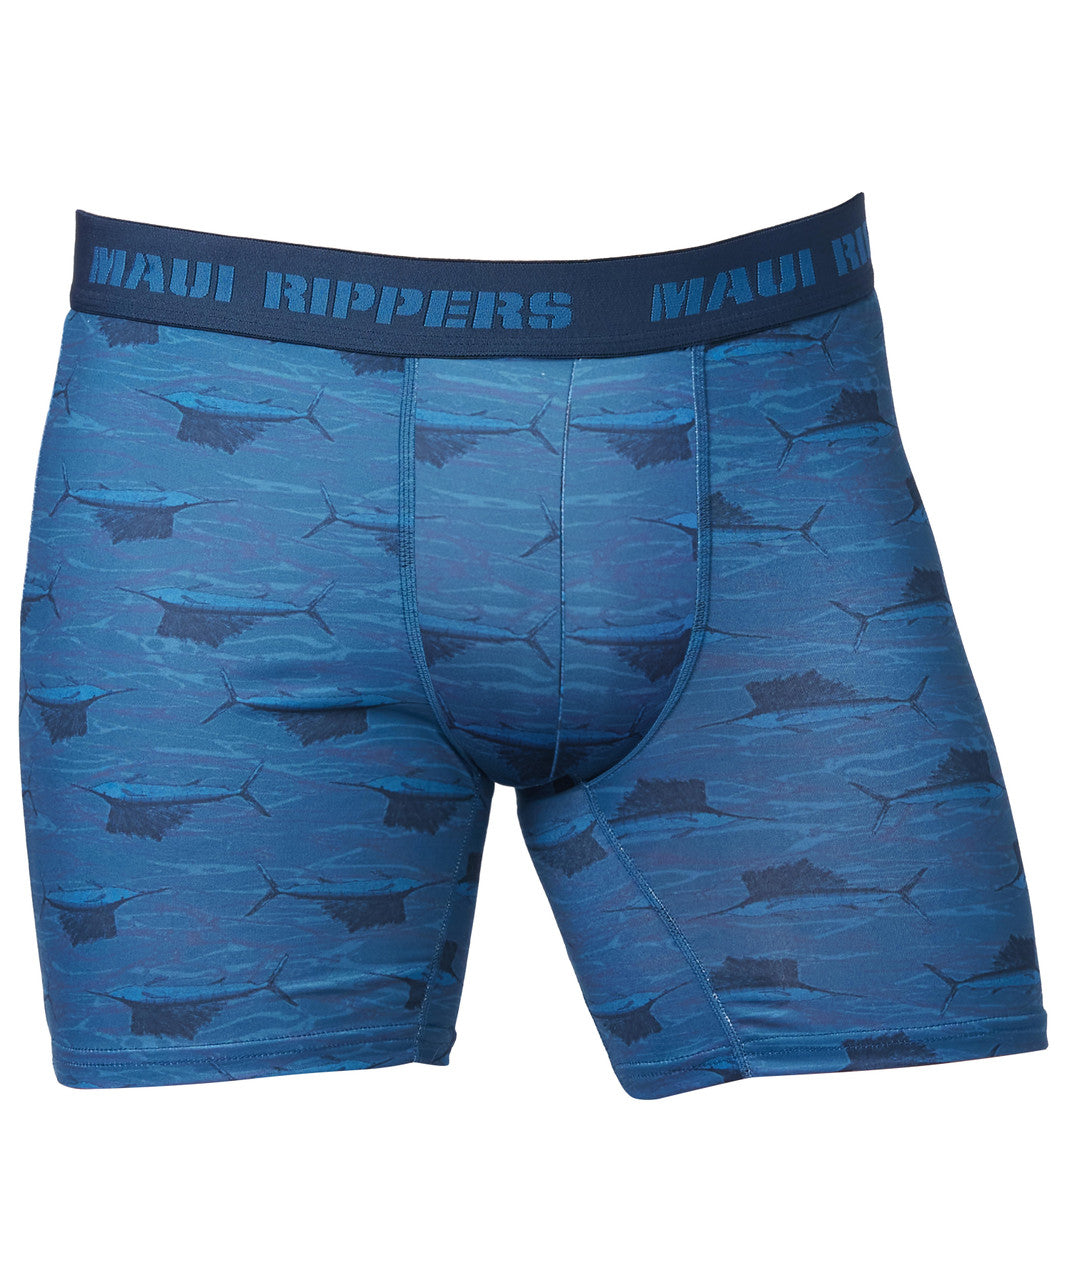 http://mauirippers.com/cdn/shop/files/Maui-rippers-Mens-Underwear_Boxer_Briefs_-_Sailfish-5__37327.1671754943.1280.1280.jpg?v=1701409651